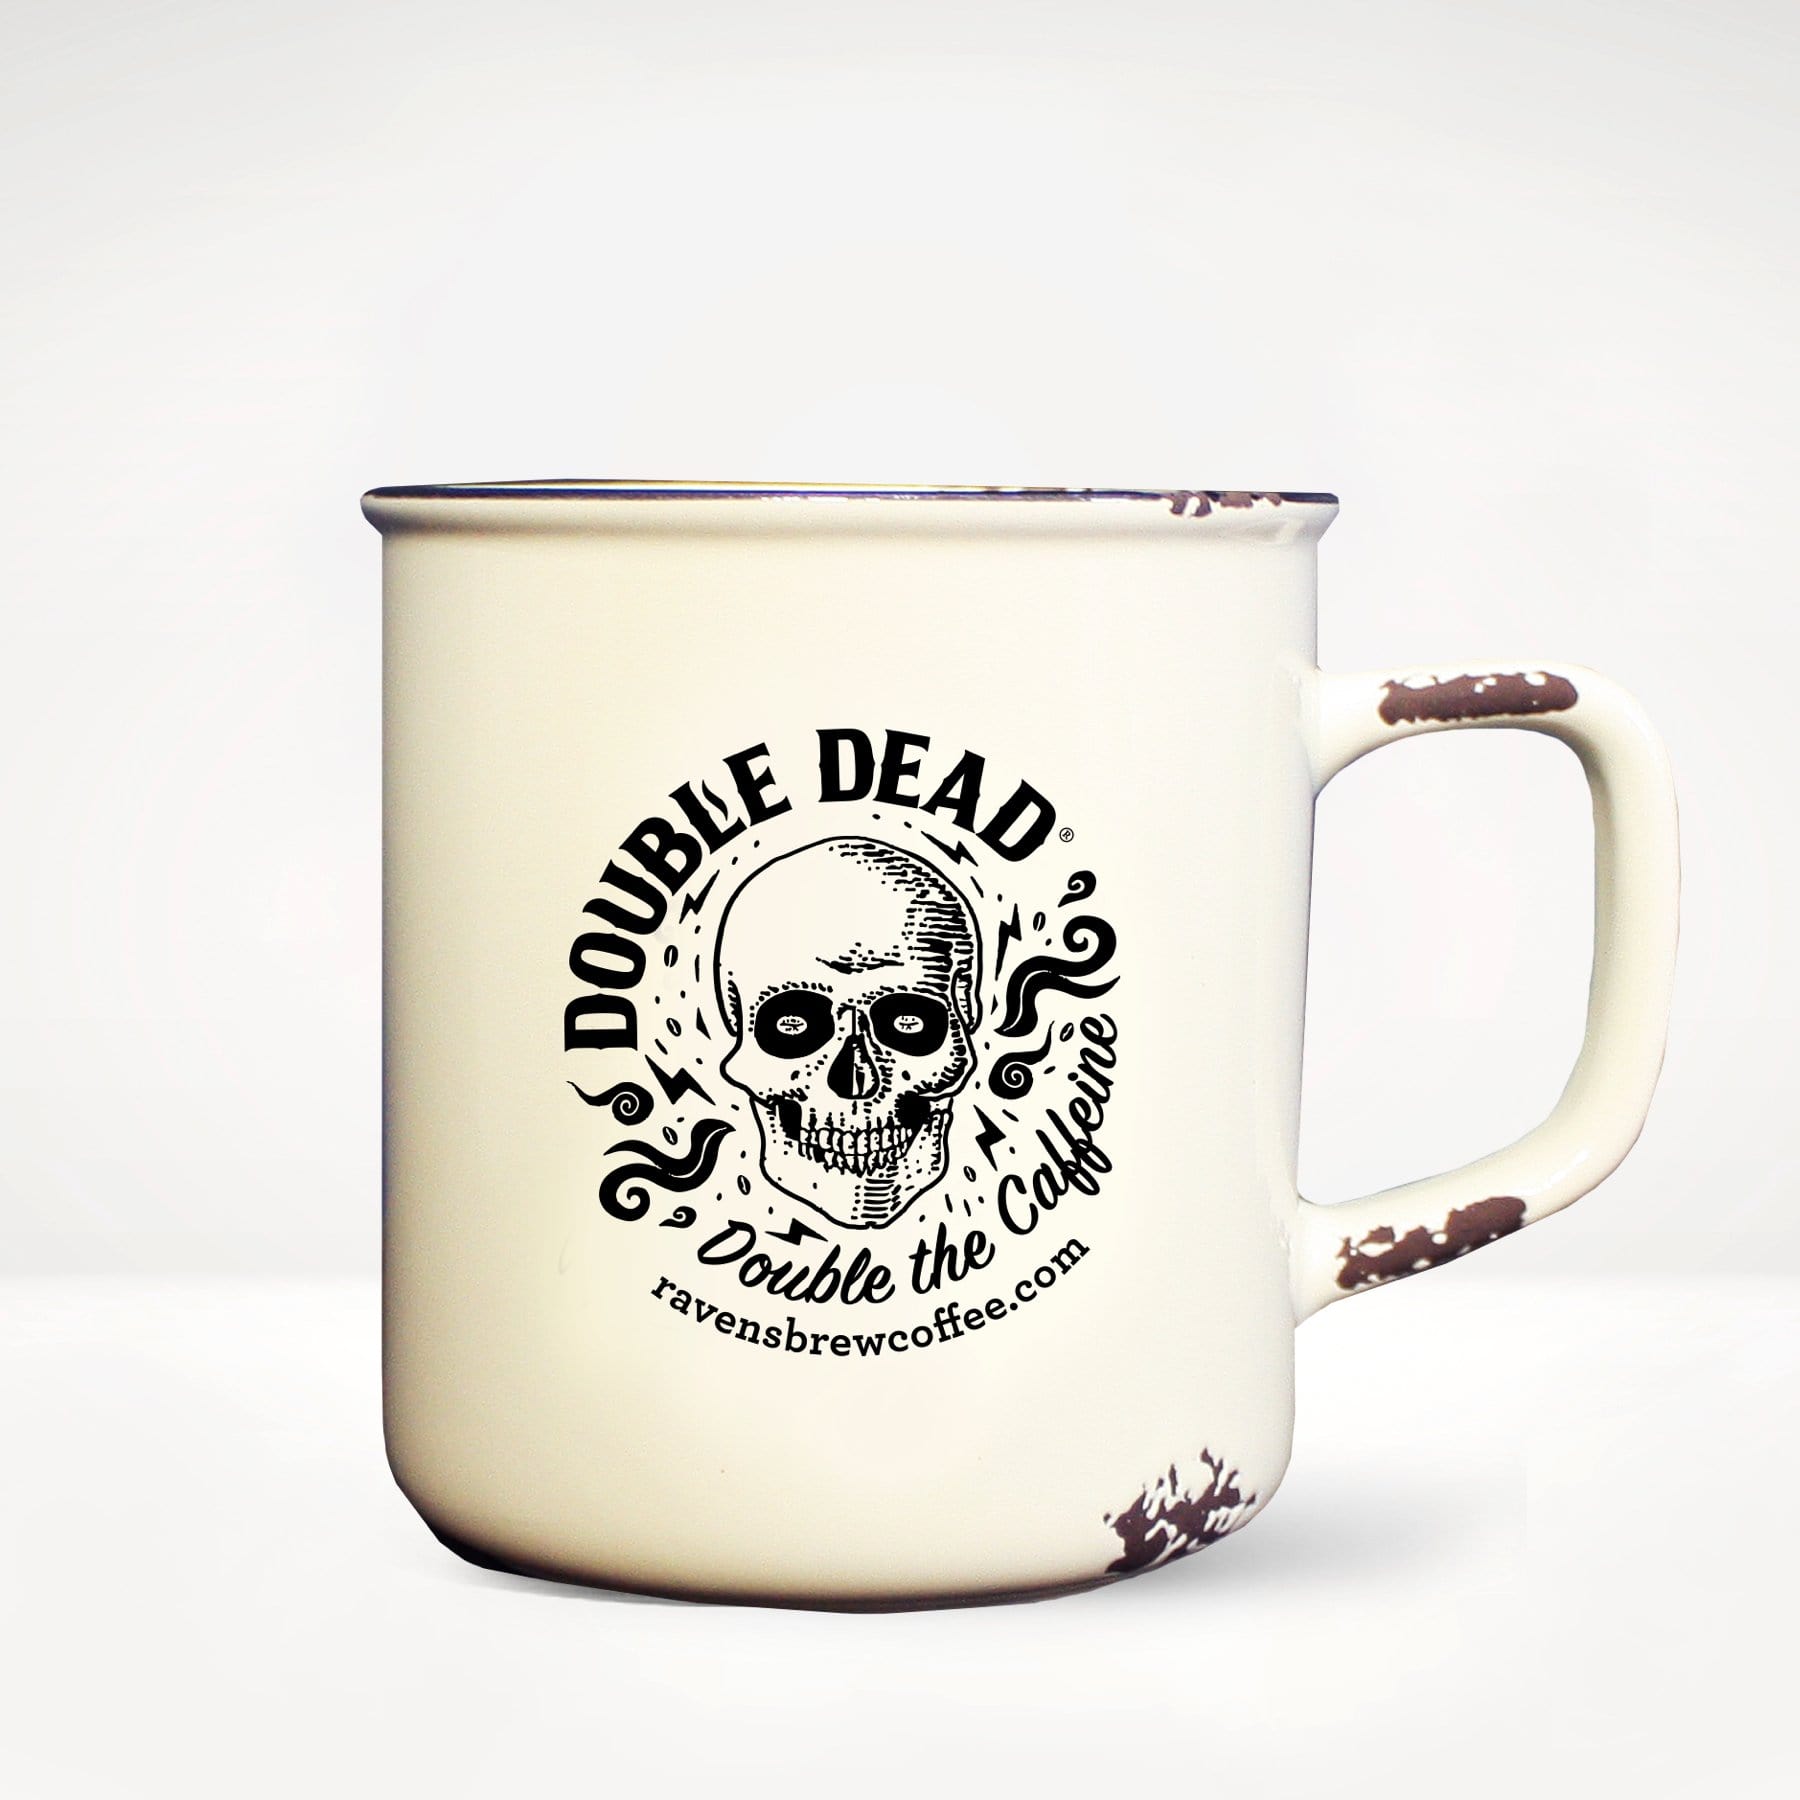 Double Dead® Camp Mug